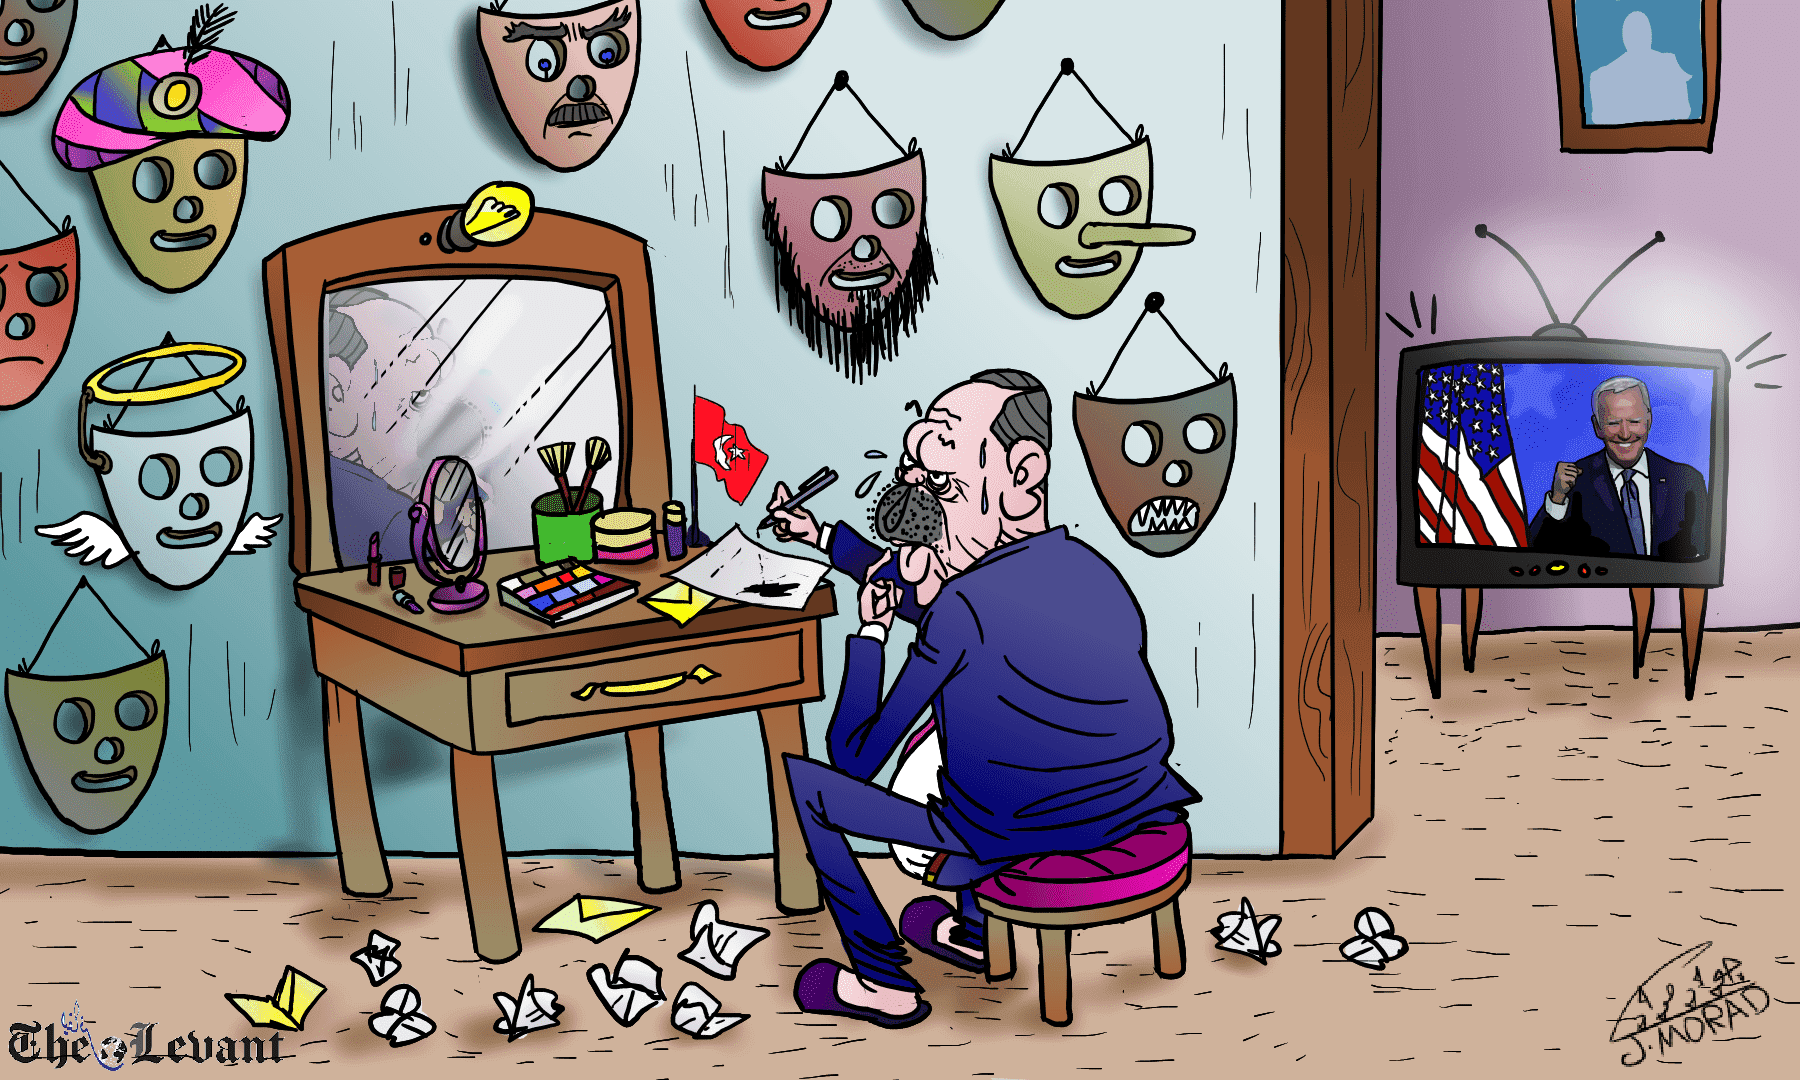 أردوغان في غرفة التبديل.. استقبالاً لبايدن